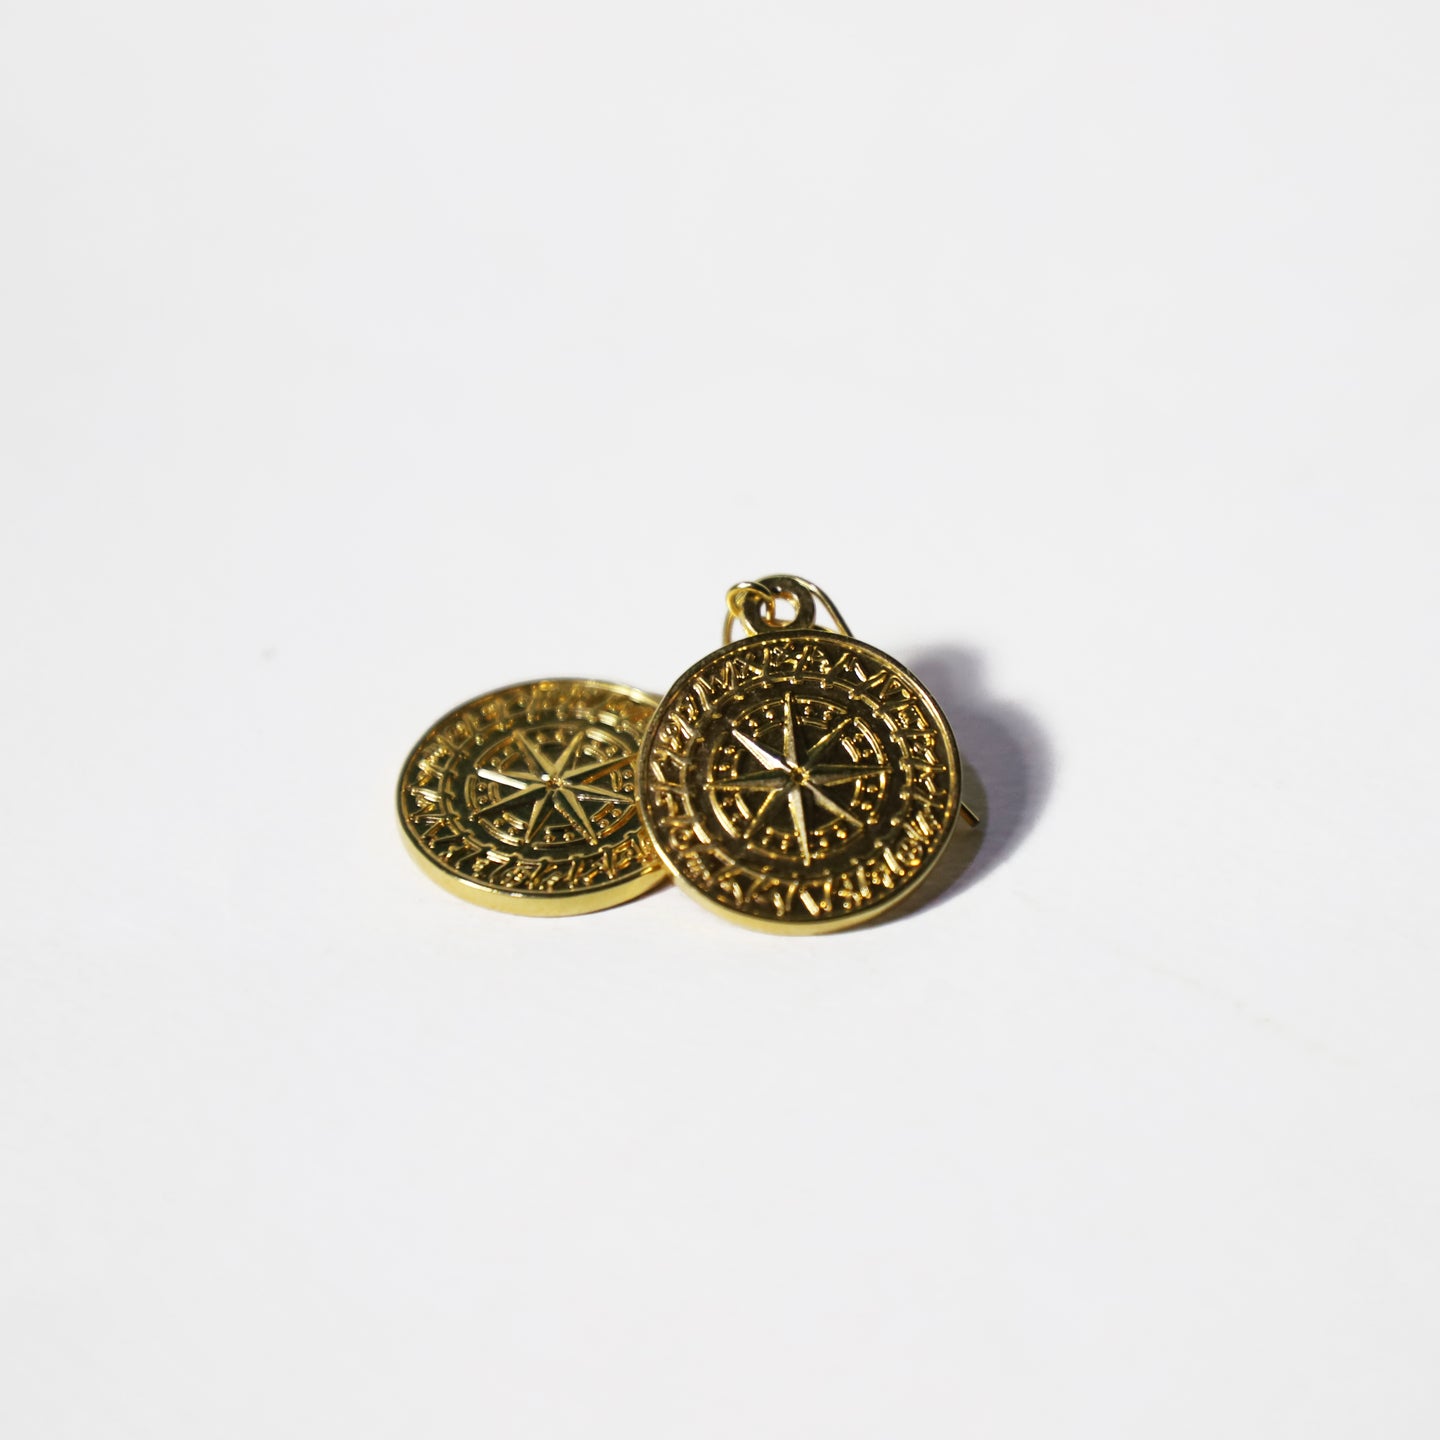 The Tabitha Lebanese Phoenician  earrings